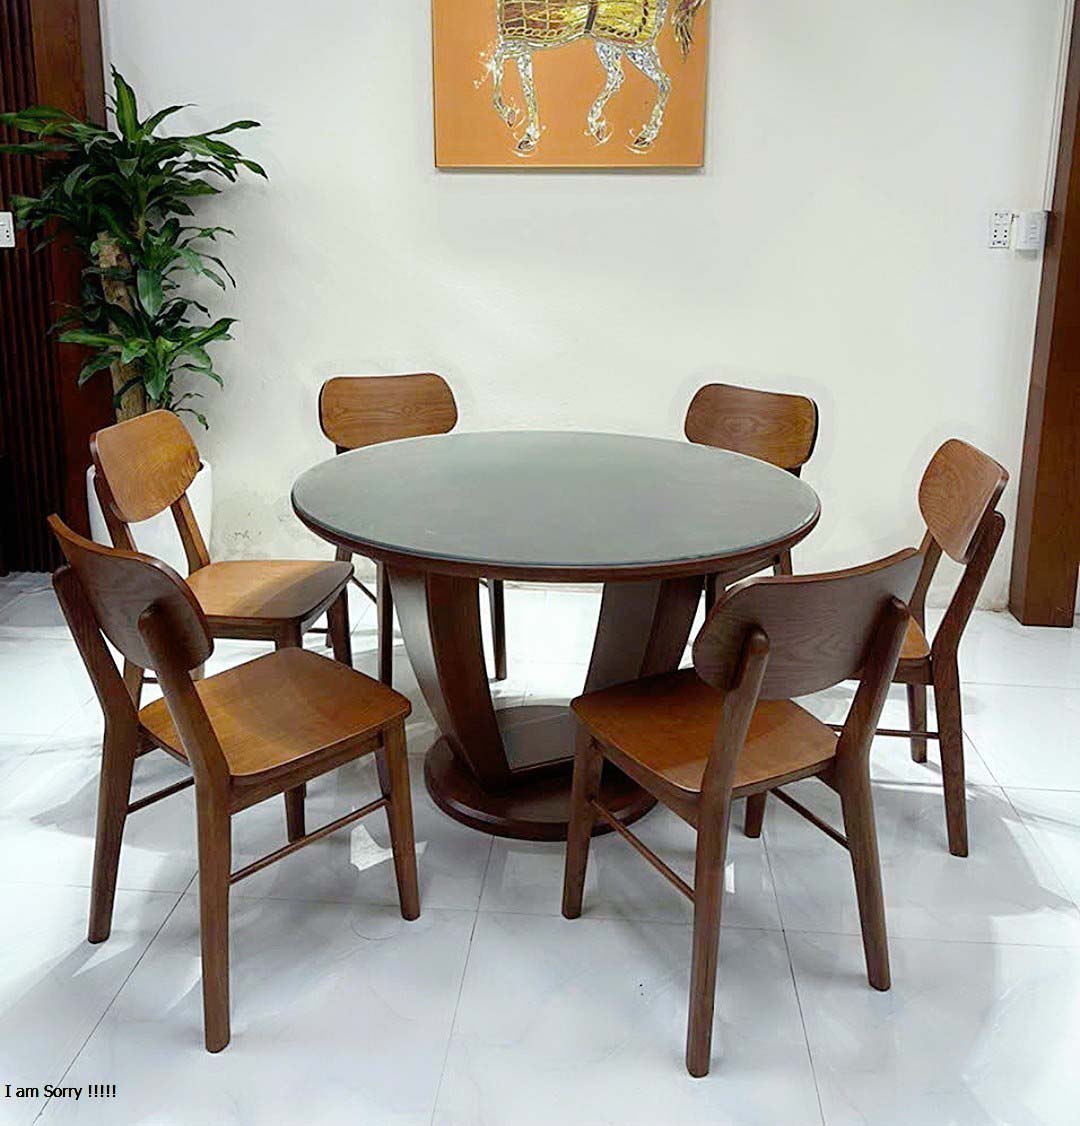 Bộ bàn ăn bàn tròn mẫu mới gỗ sồi, bộ bàn ăn 6 ghế mẫu mới giá rẻ hàng xưởng bao chất